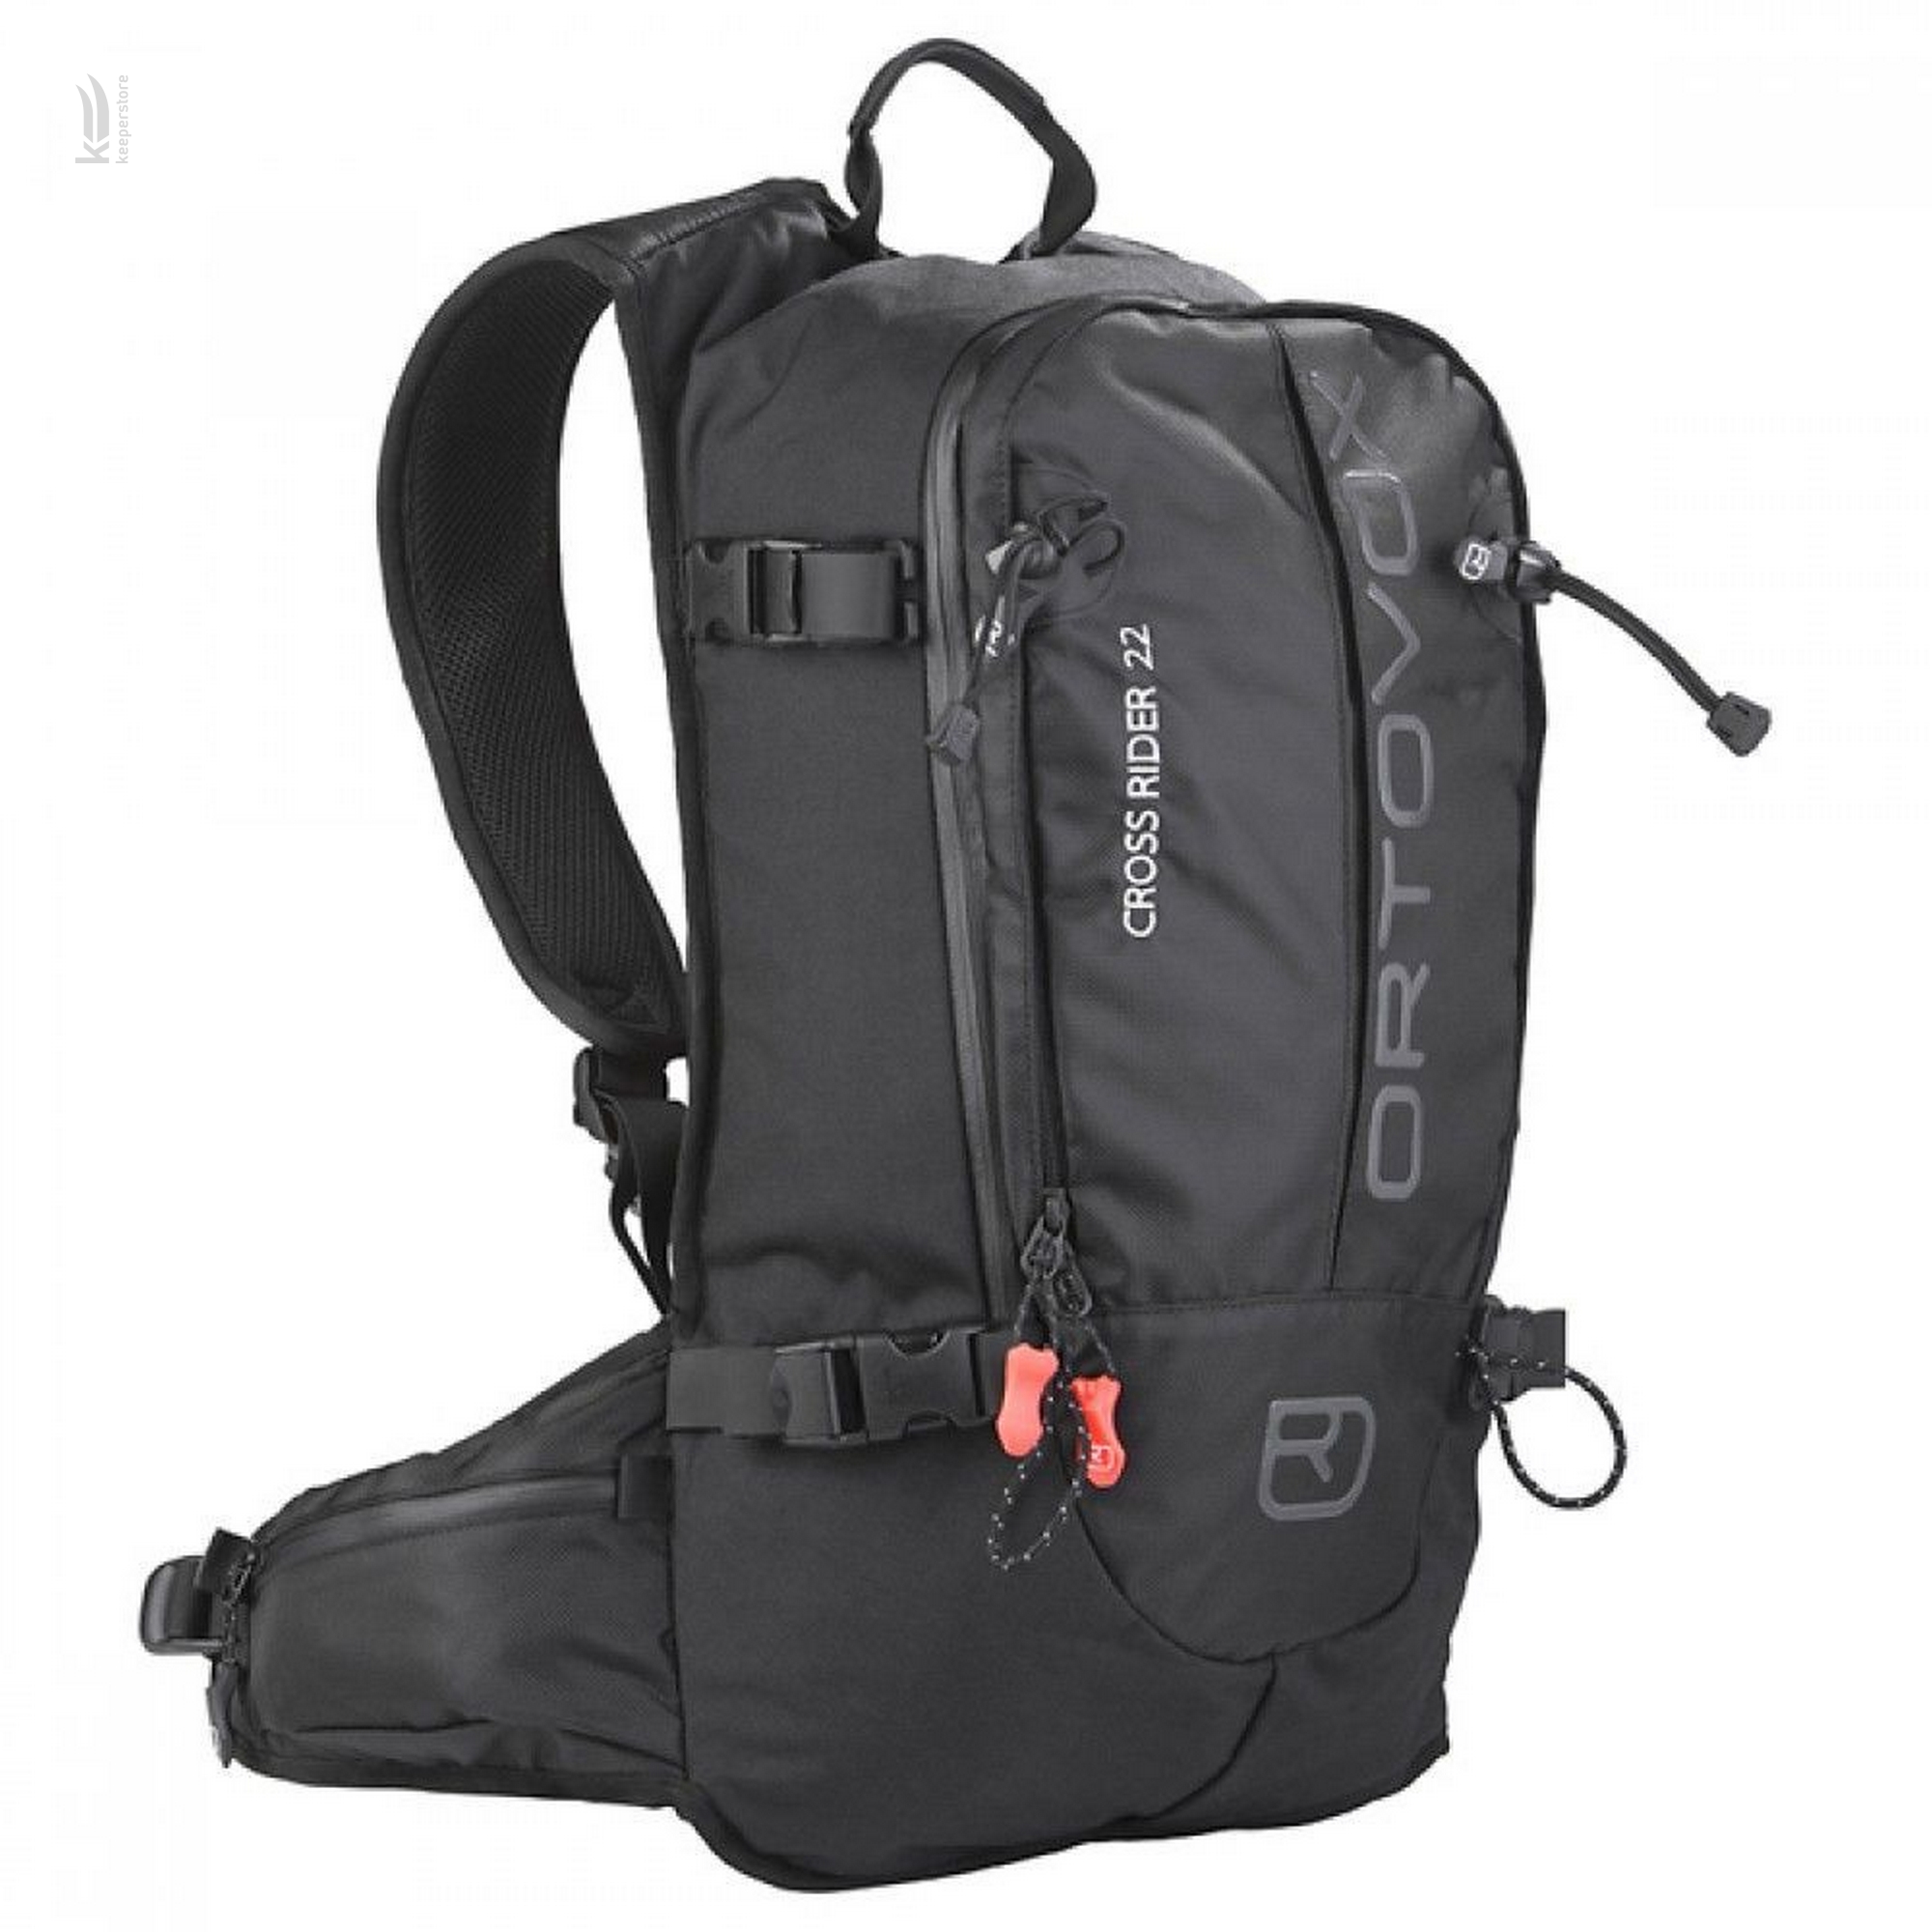 Горнолыжный рюкзак с защитой спины Ortovox Cross Rider W Black